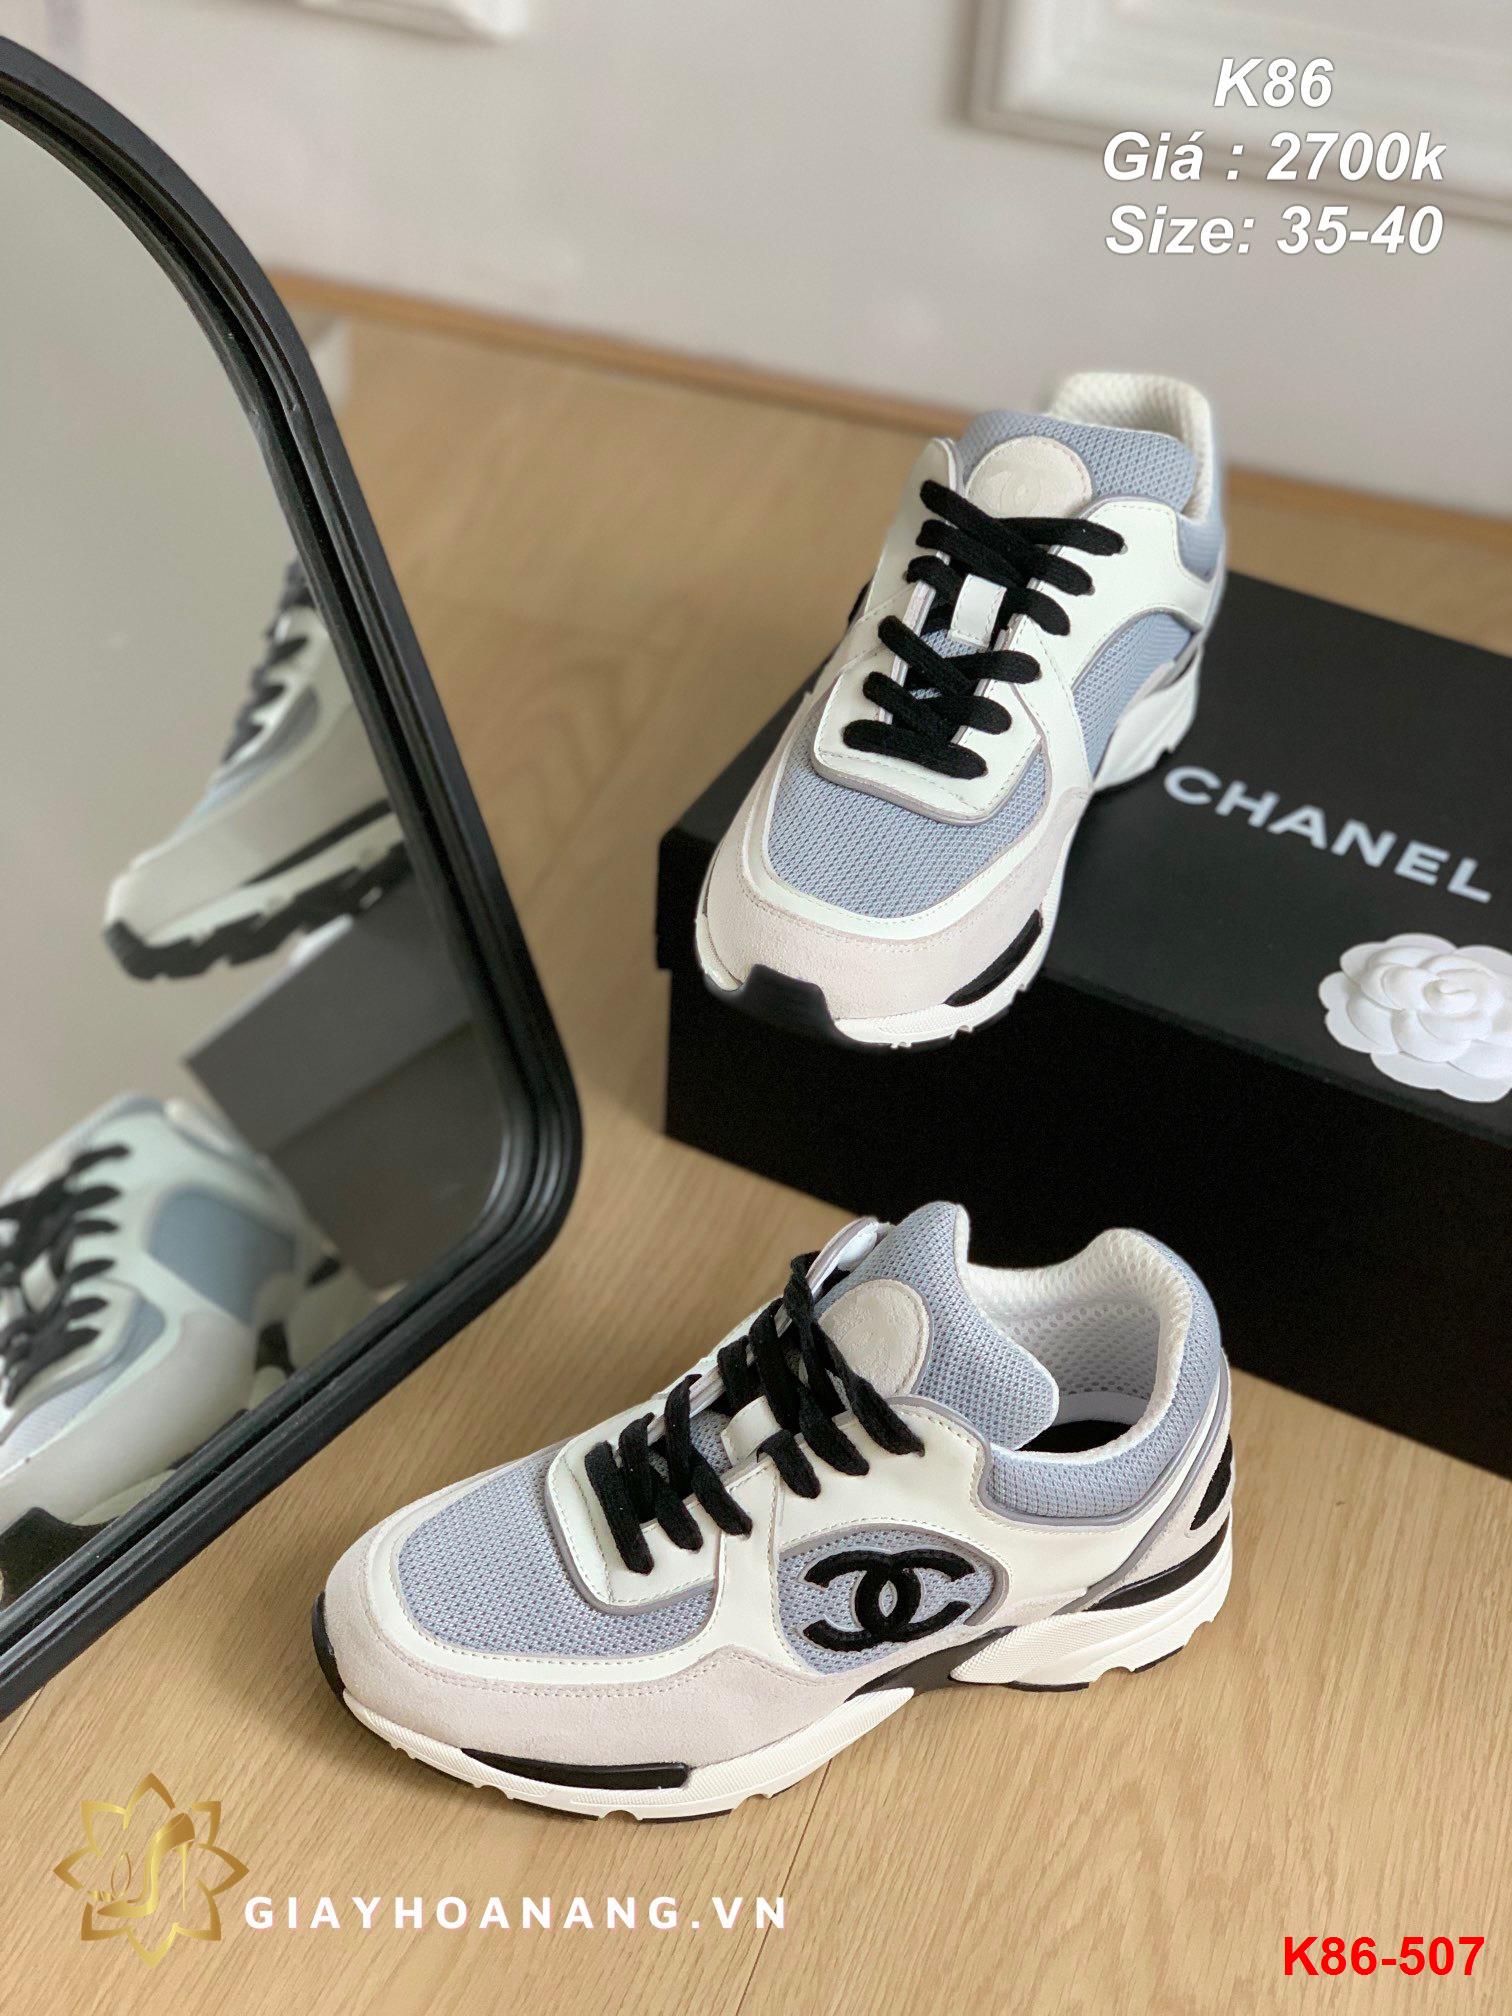 K86-507 Chanel giày thể thao siêu cấp